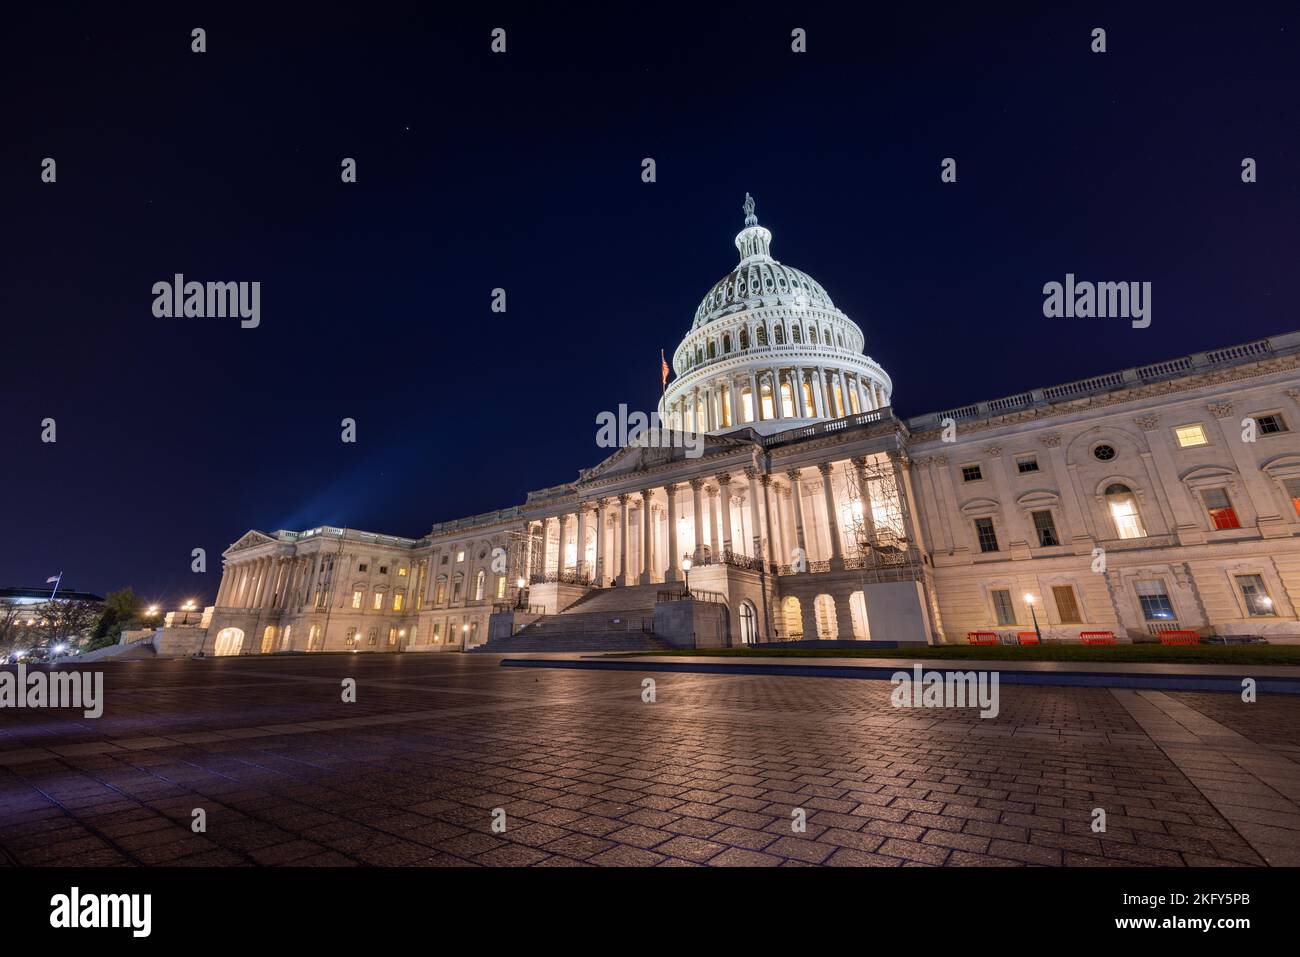 El lado este del edificio del Capitolio de los Estados Unidos en Washington, DC en una noche de otoño. Los focos iluminan la cúpula del Capitolio. Foto de stock